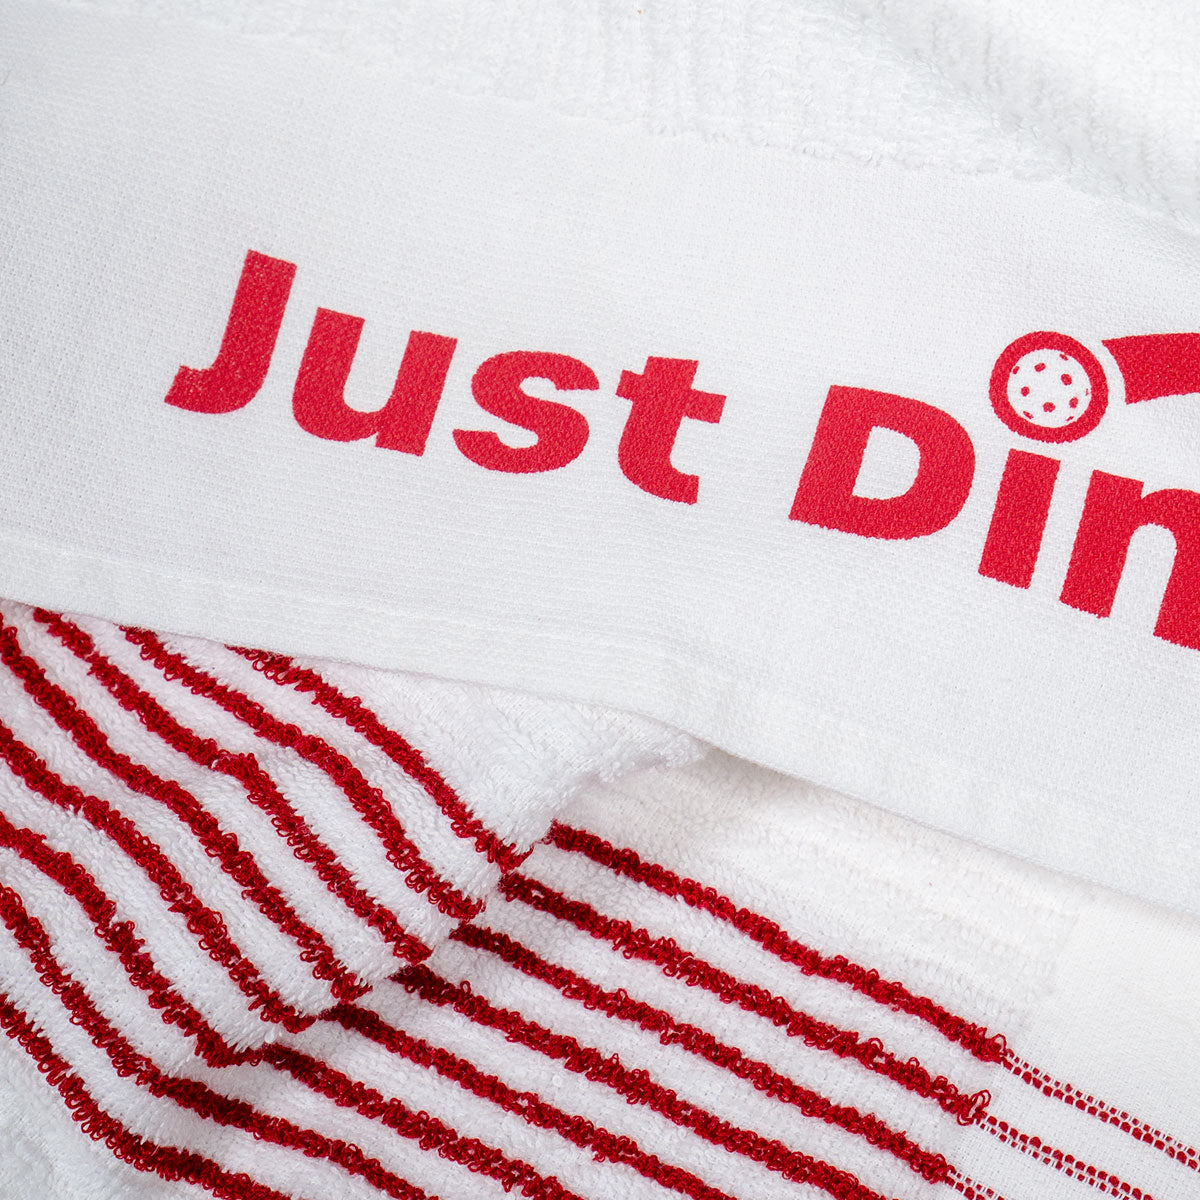 Club Towel | Just Dink It